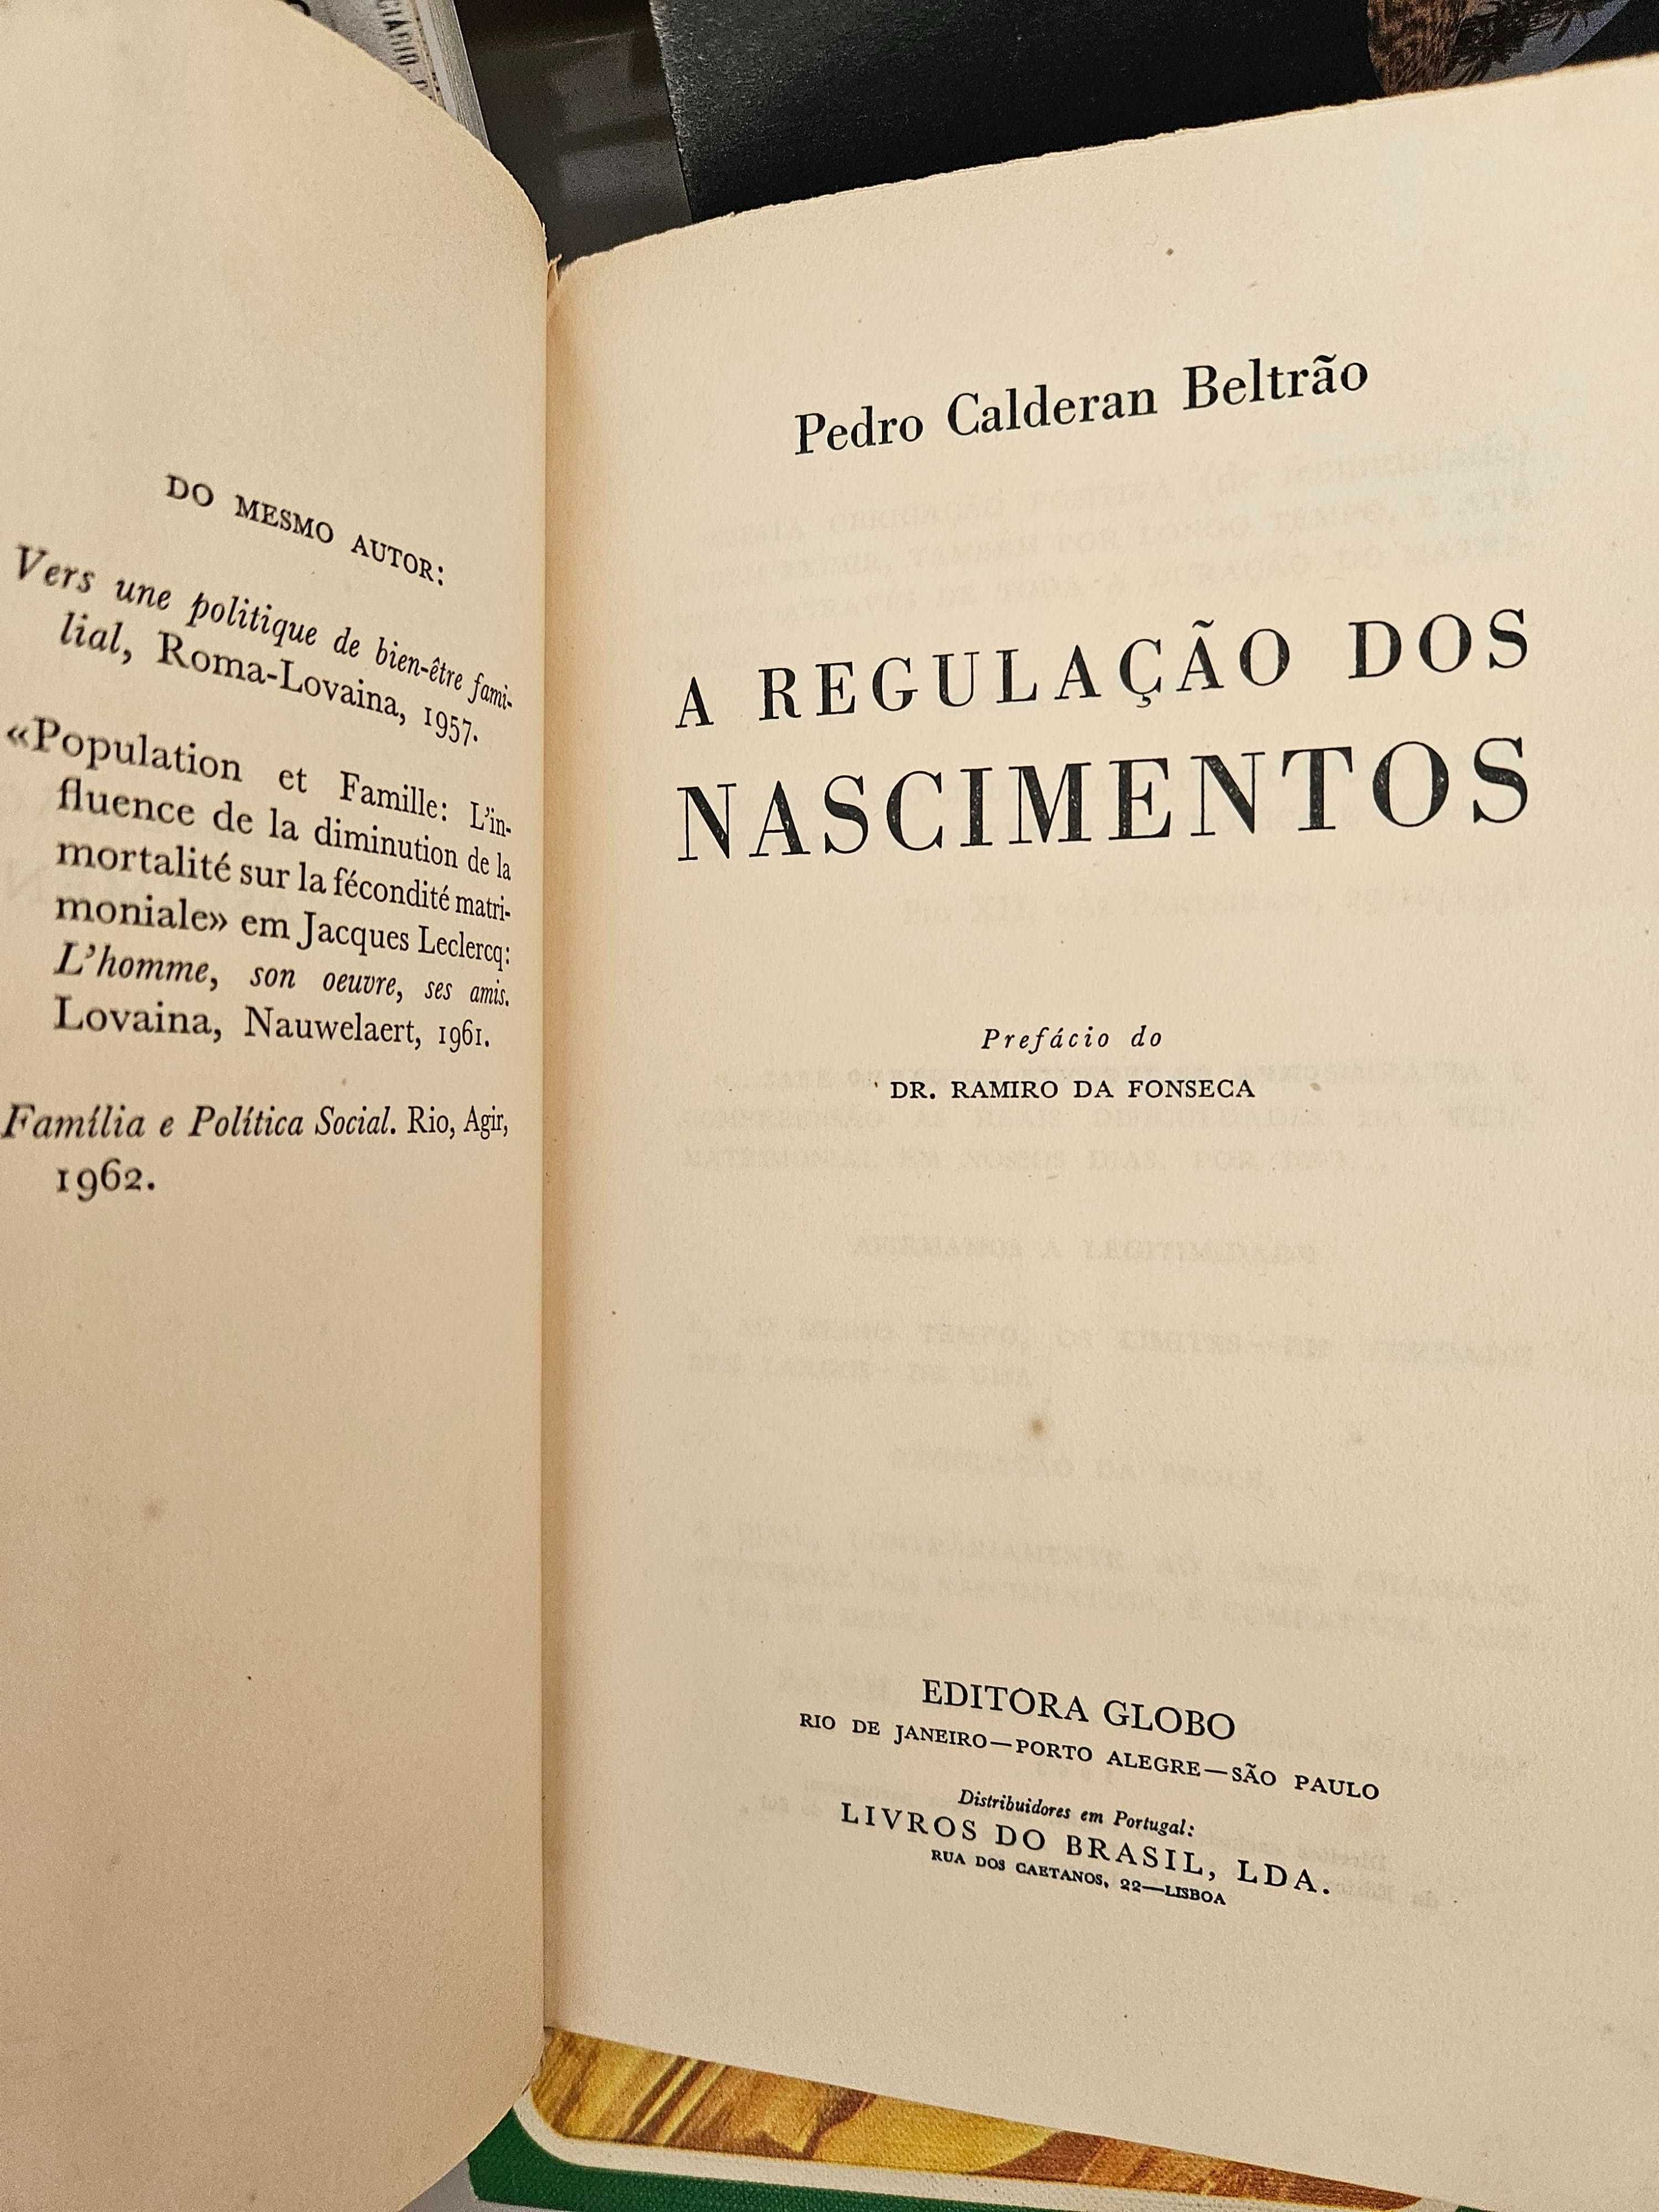 Pedro Calderan Beltrão - A regulação dos nascimentos